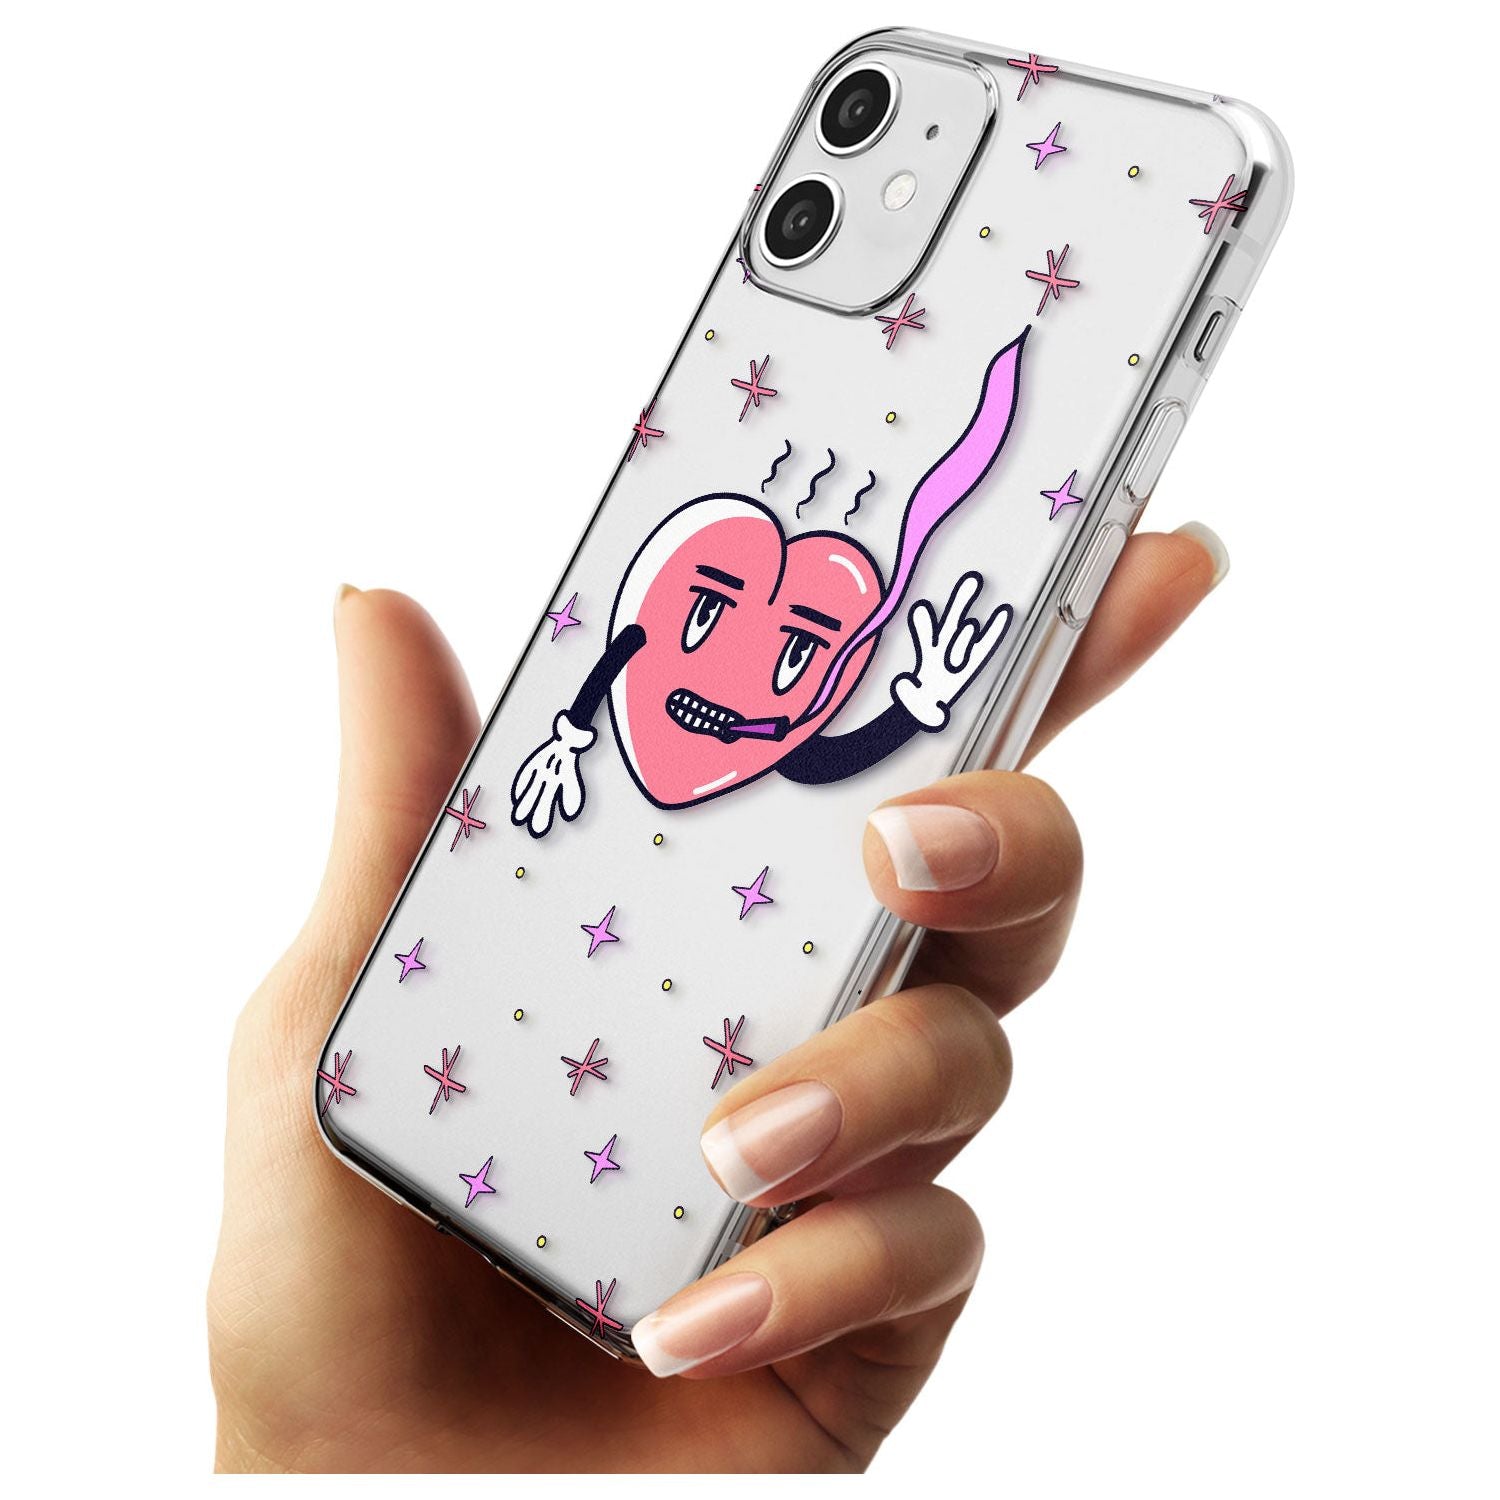 Rock n Roll Heart (Clear) Slim TPU Phone Case for iPhone 11